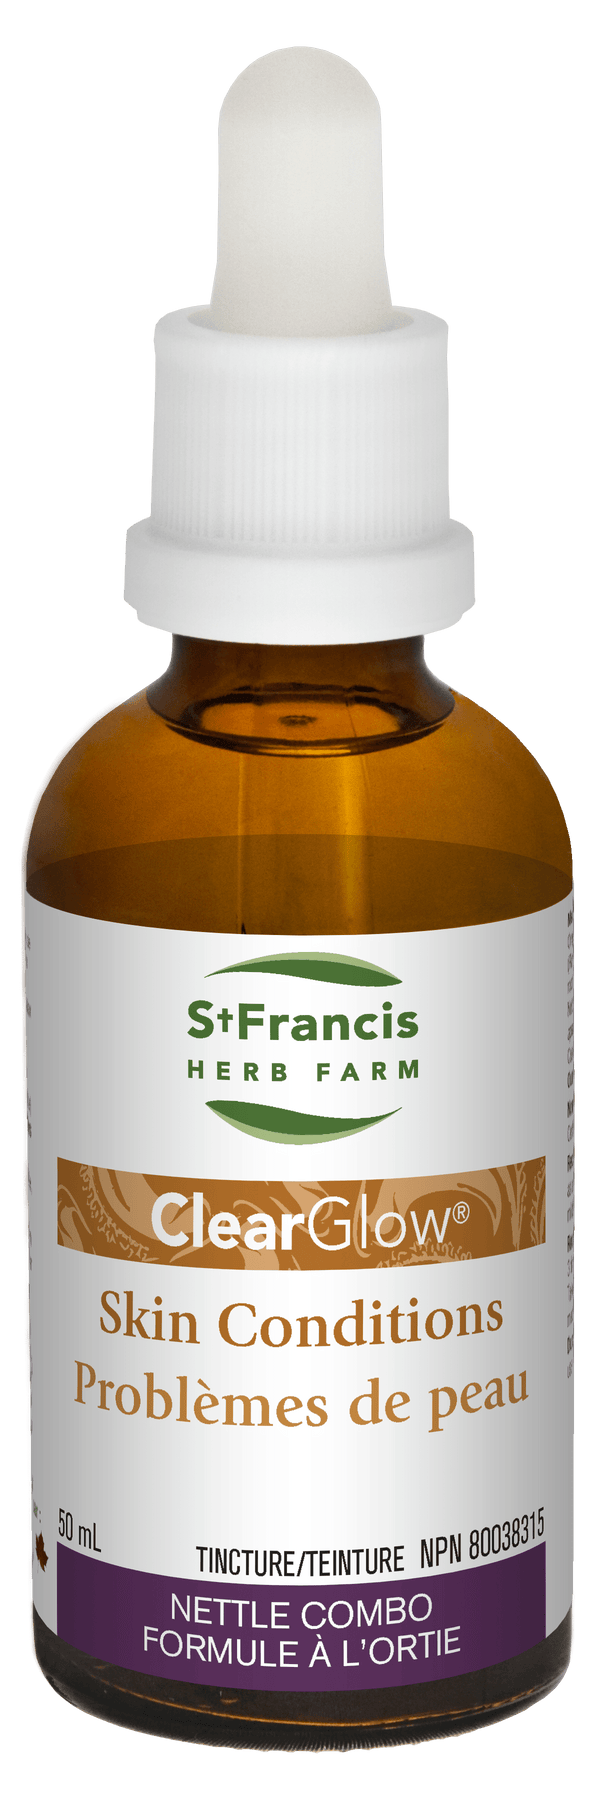 세인트 프랜시스 허브팜 클리어글로우 50 ml